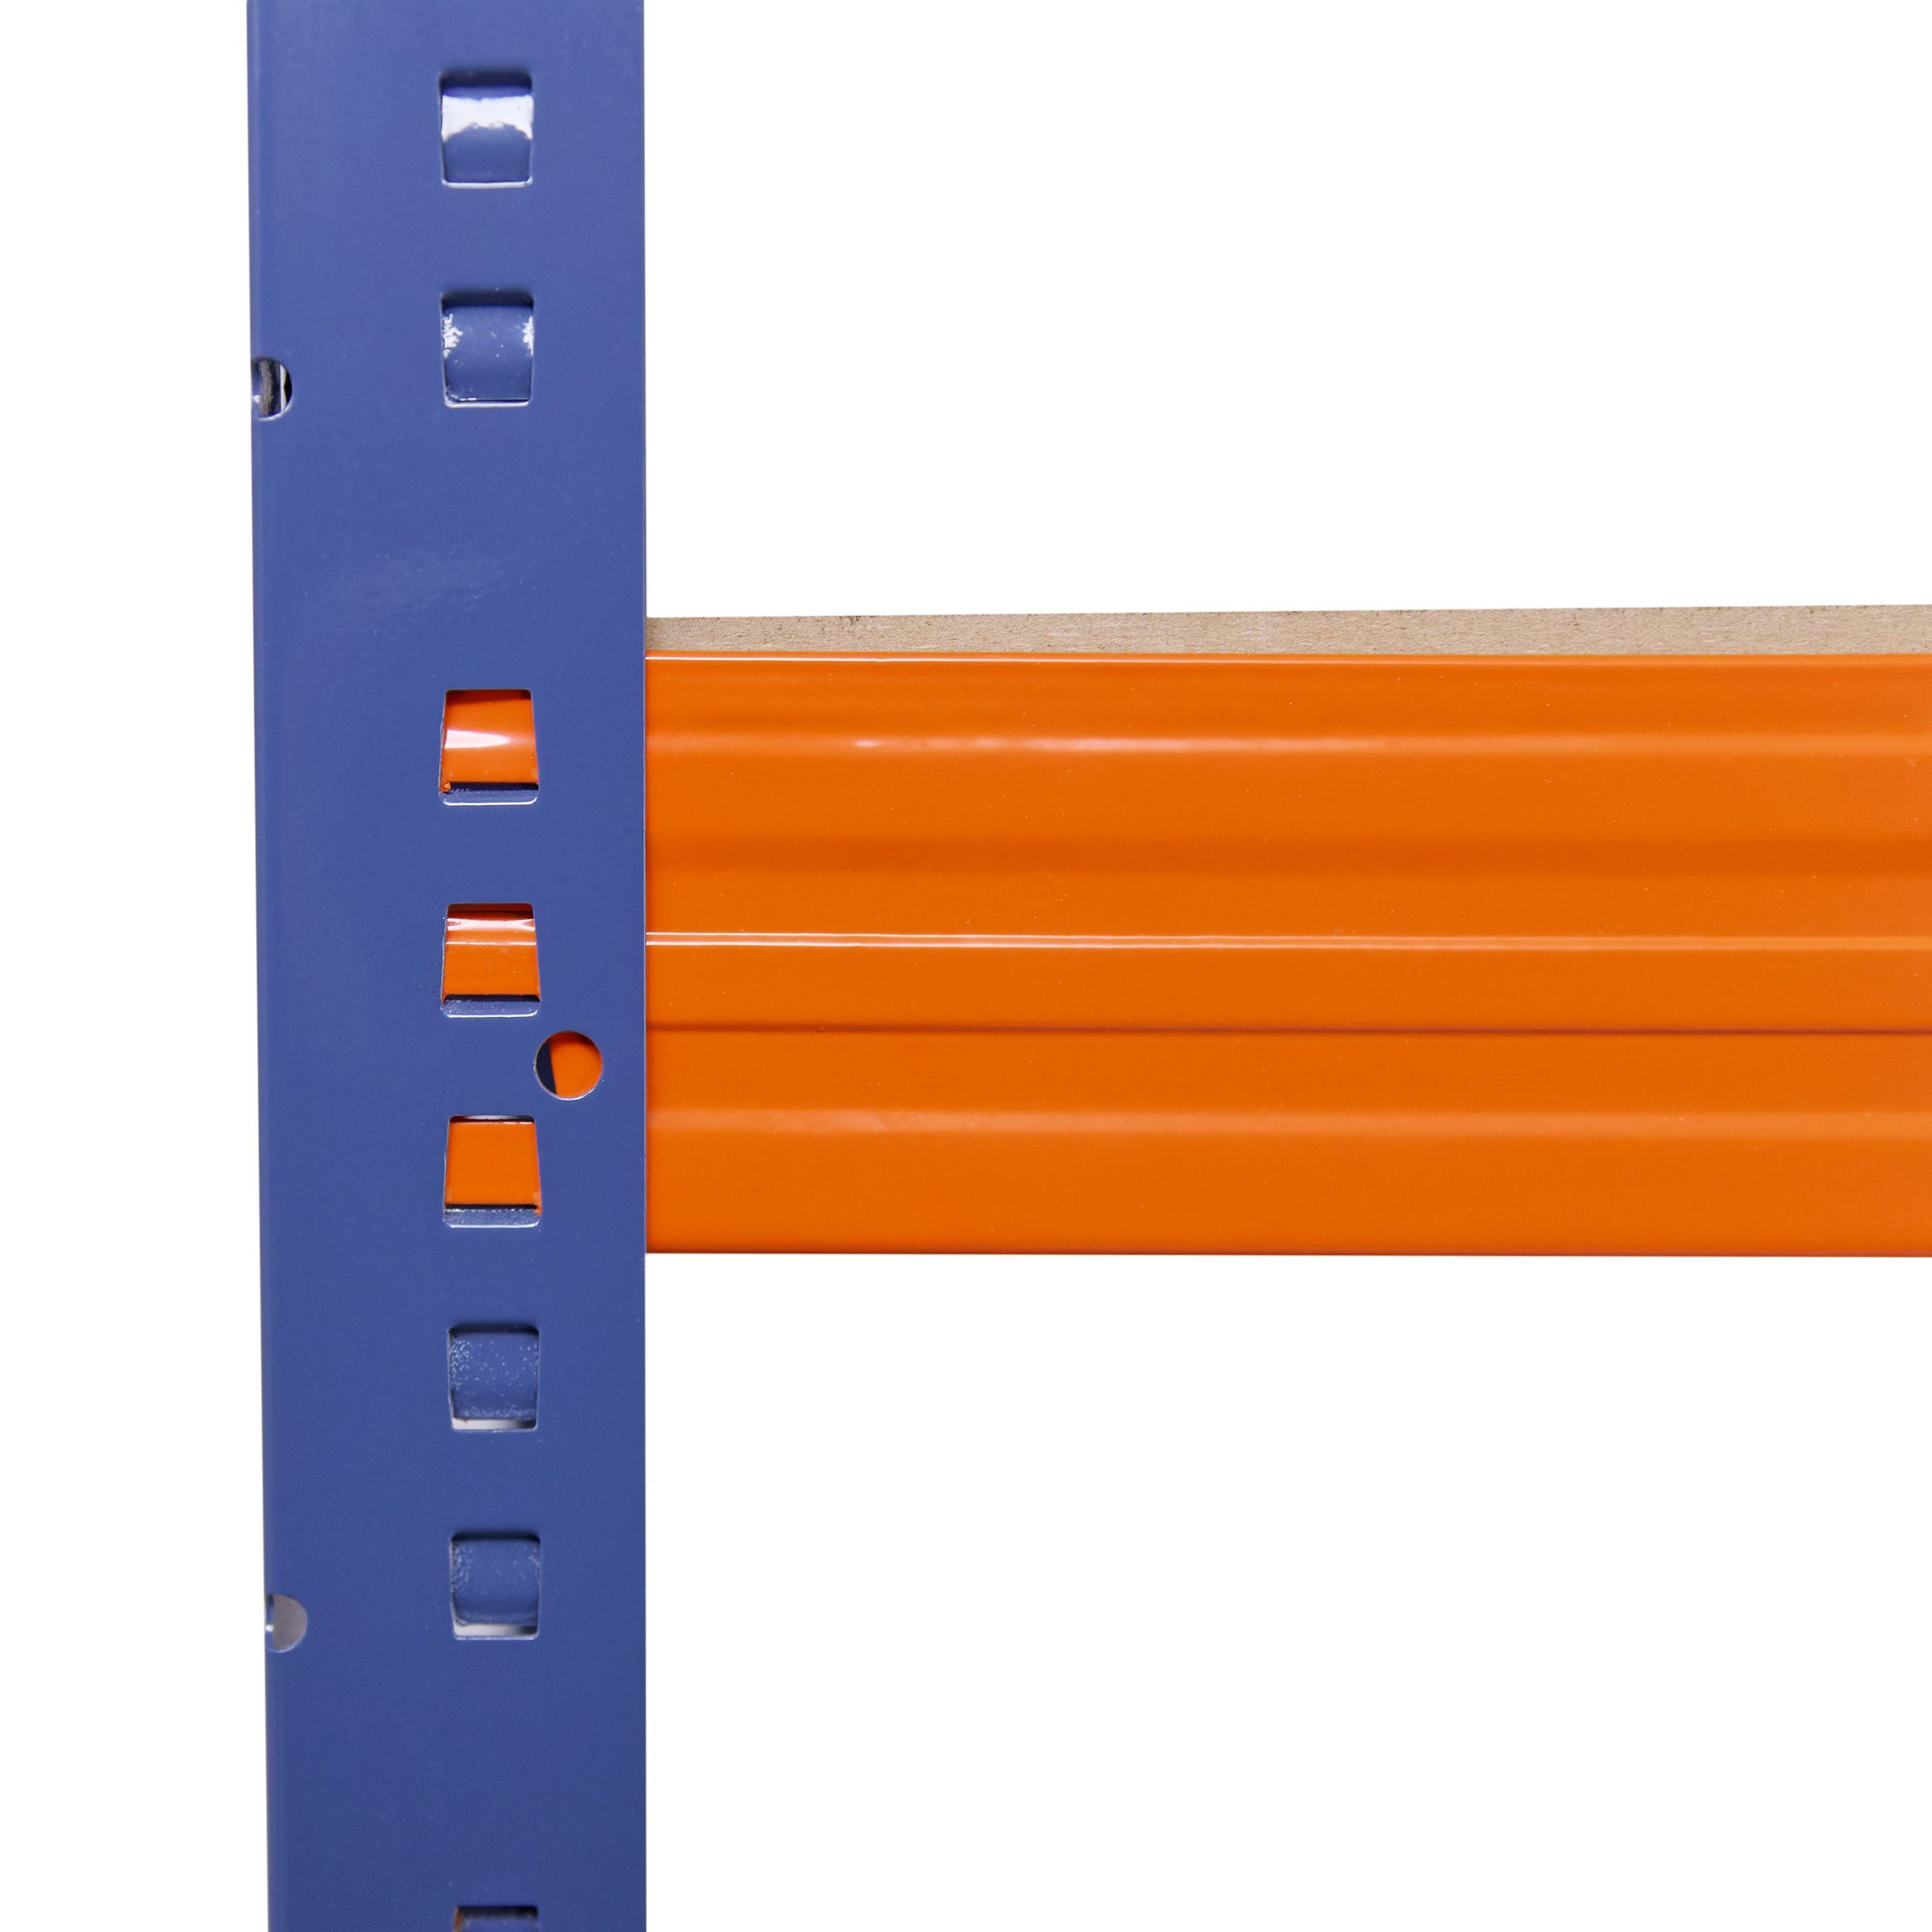 Steckregal Tragkraft, 5 Böden je Regale Garagenregal, Kellerregal, Schwerlastregal 200x120x50cm Metall Metallregal mit PROFI, shelfplaza als blau-orange, Lagerregal, Regal & 200kg Werkstattregal